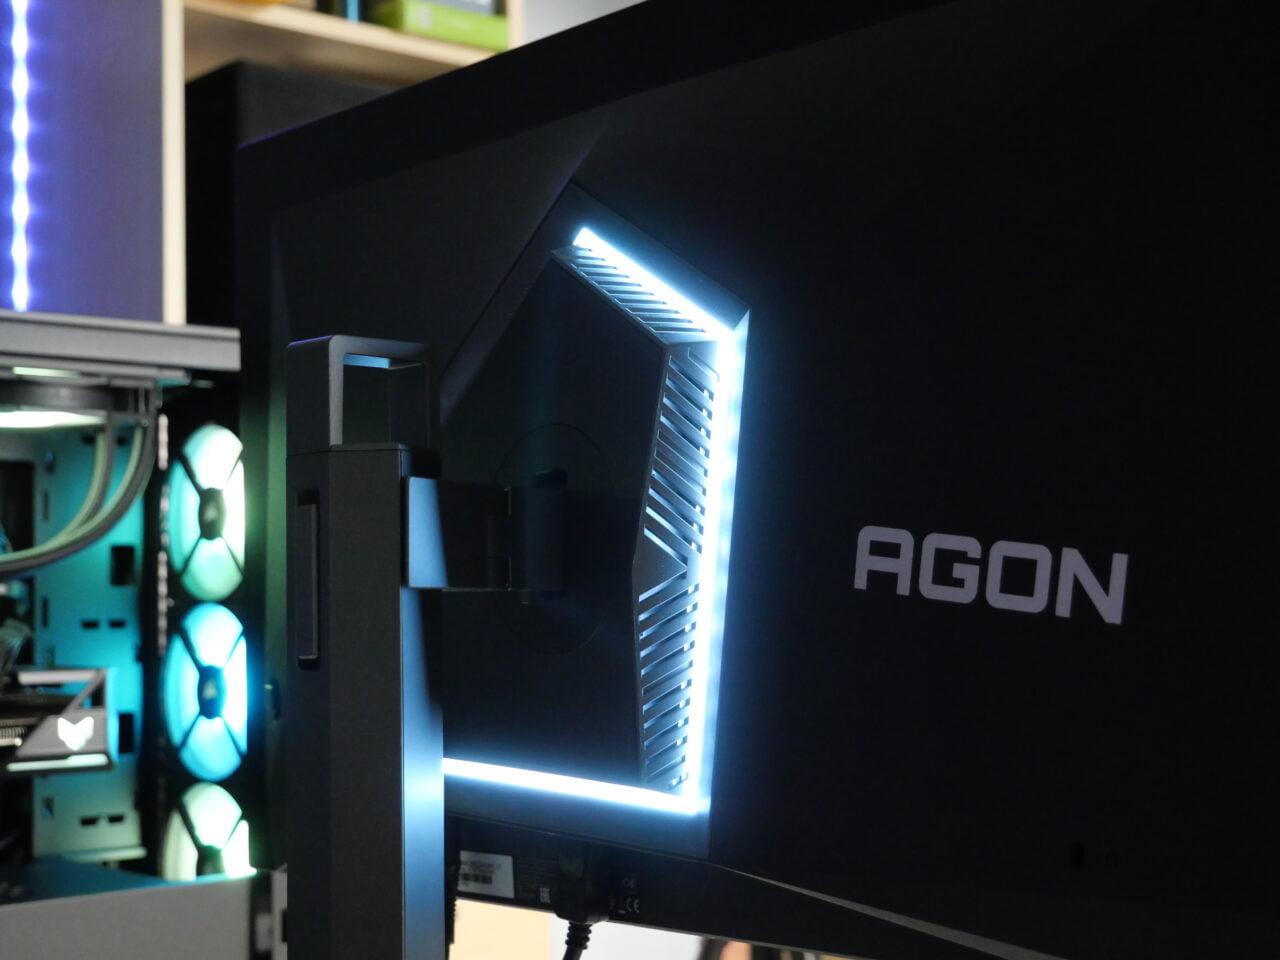 Monitor gamingowy marki Agon z podświetleniem LED, widoczny tył monitora i elementy komputera gamingowego w tle.